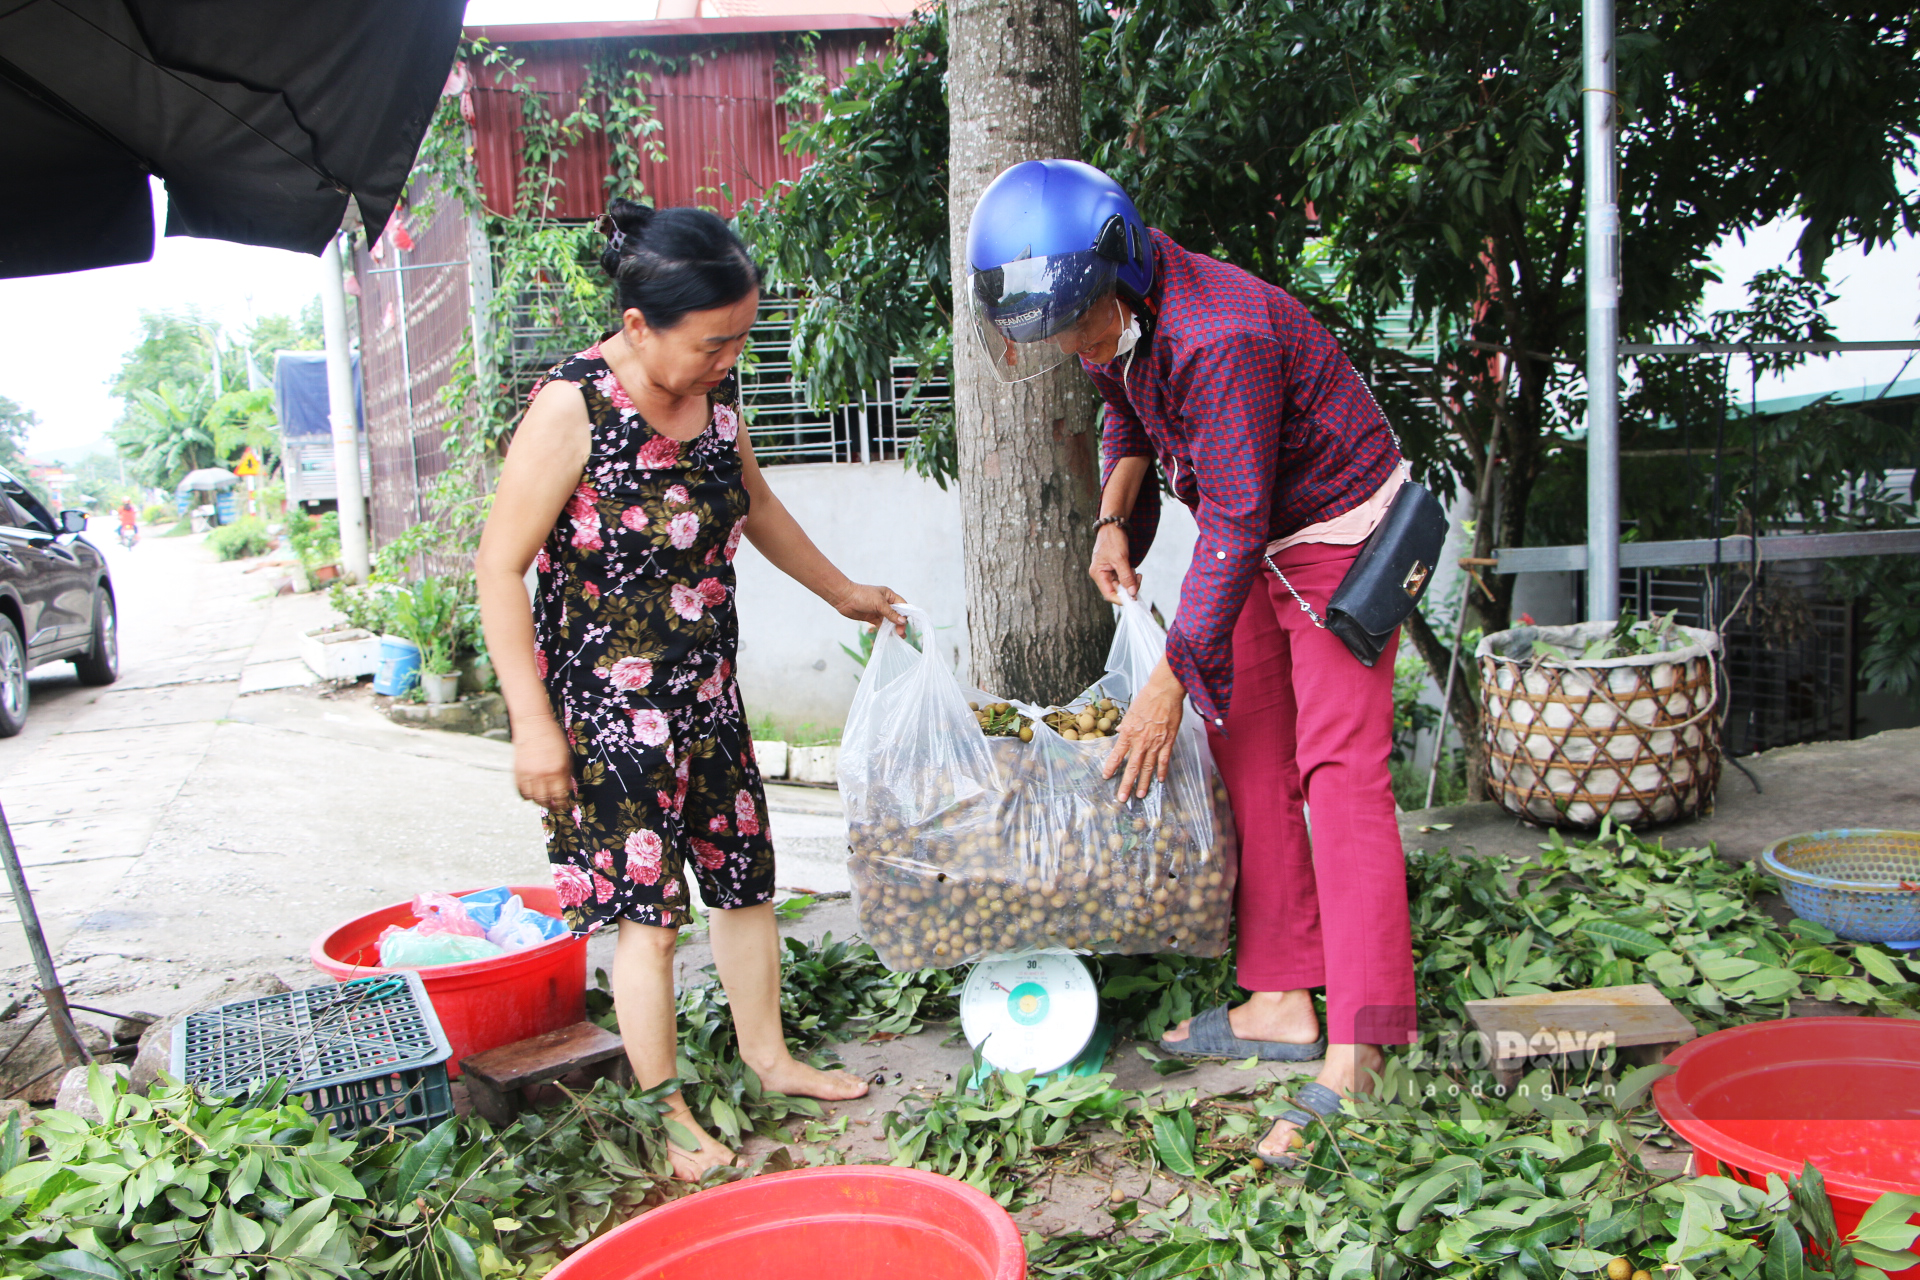 Thời điểm cuối tháng 7 trở đi, thương lái từ khắp nơi sẽ tìm đến xã Thái Bình (huyện Yên Sơn) để thu mua nhãn Bình Ca. Nhãn vùng này từ lâu đã được biết đến với chất lượng thơm ngon.